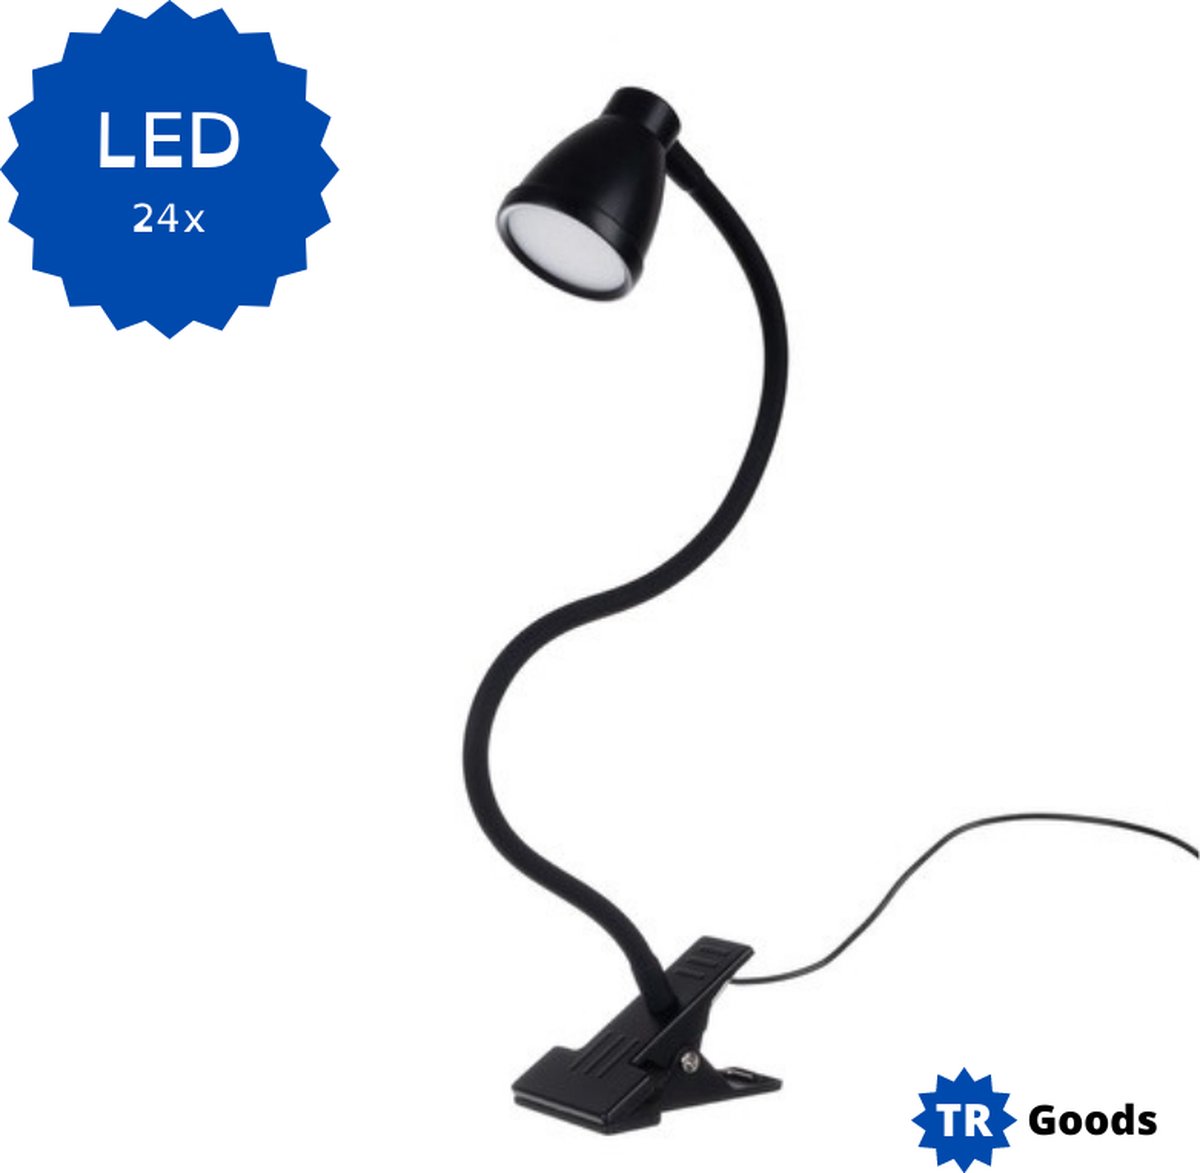 T.R. Goods - Bureaulamp LED (24x) - Dimmer - 3 Kleurstanden - Klem ook als Voet te gebruiken - Bureau Lamp - zwart